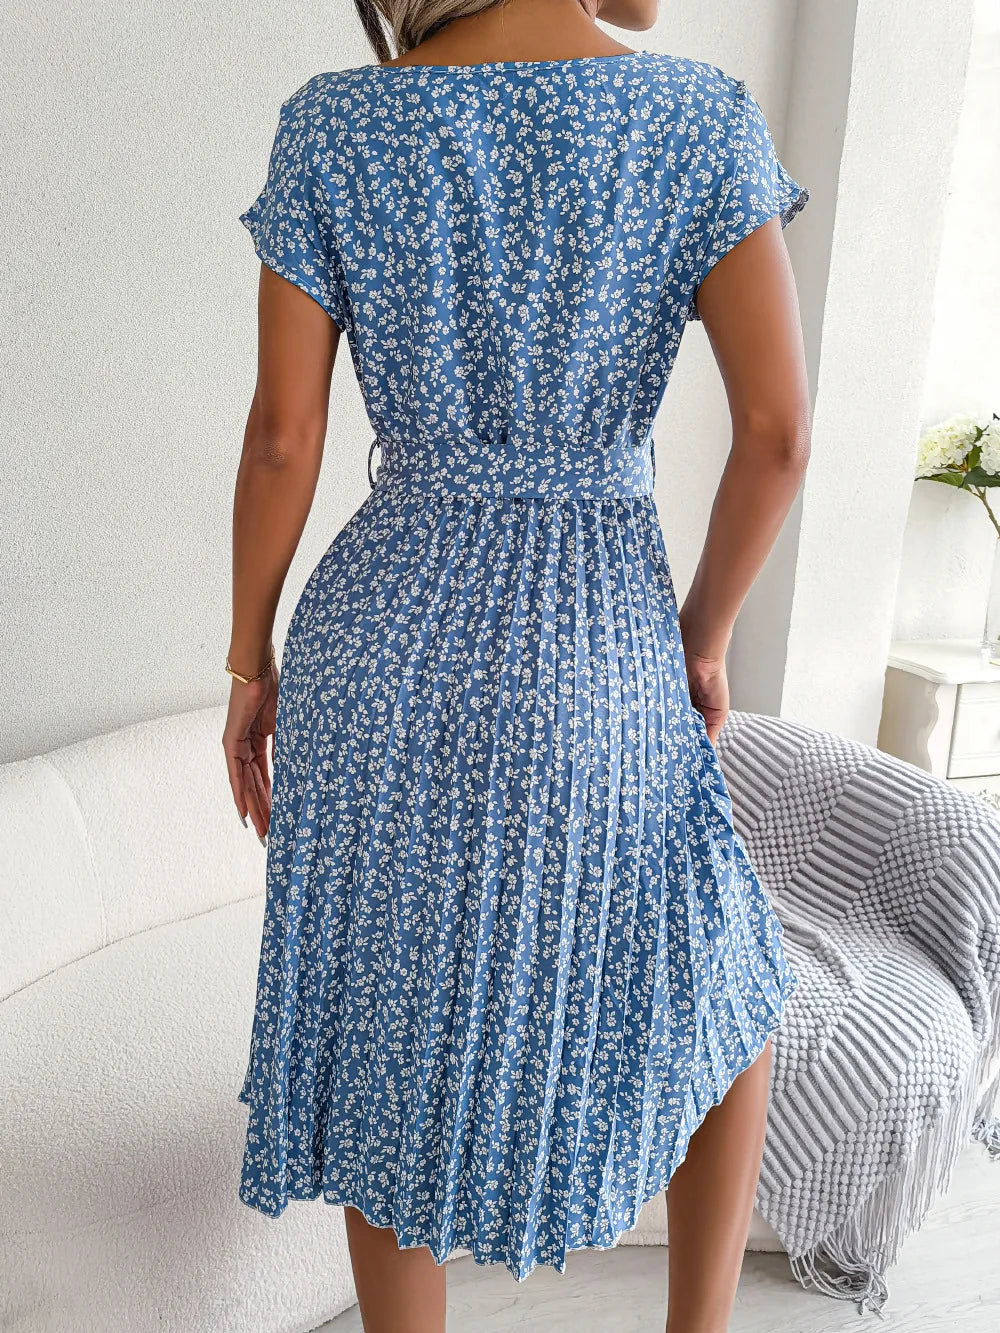 Blue Spring/Summer Floral Pleated A-Line Dress with Short Sleeves - Effortlessly Elegant